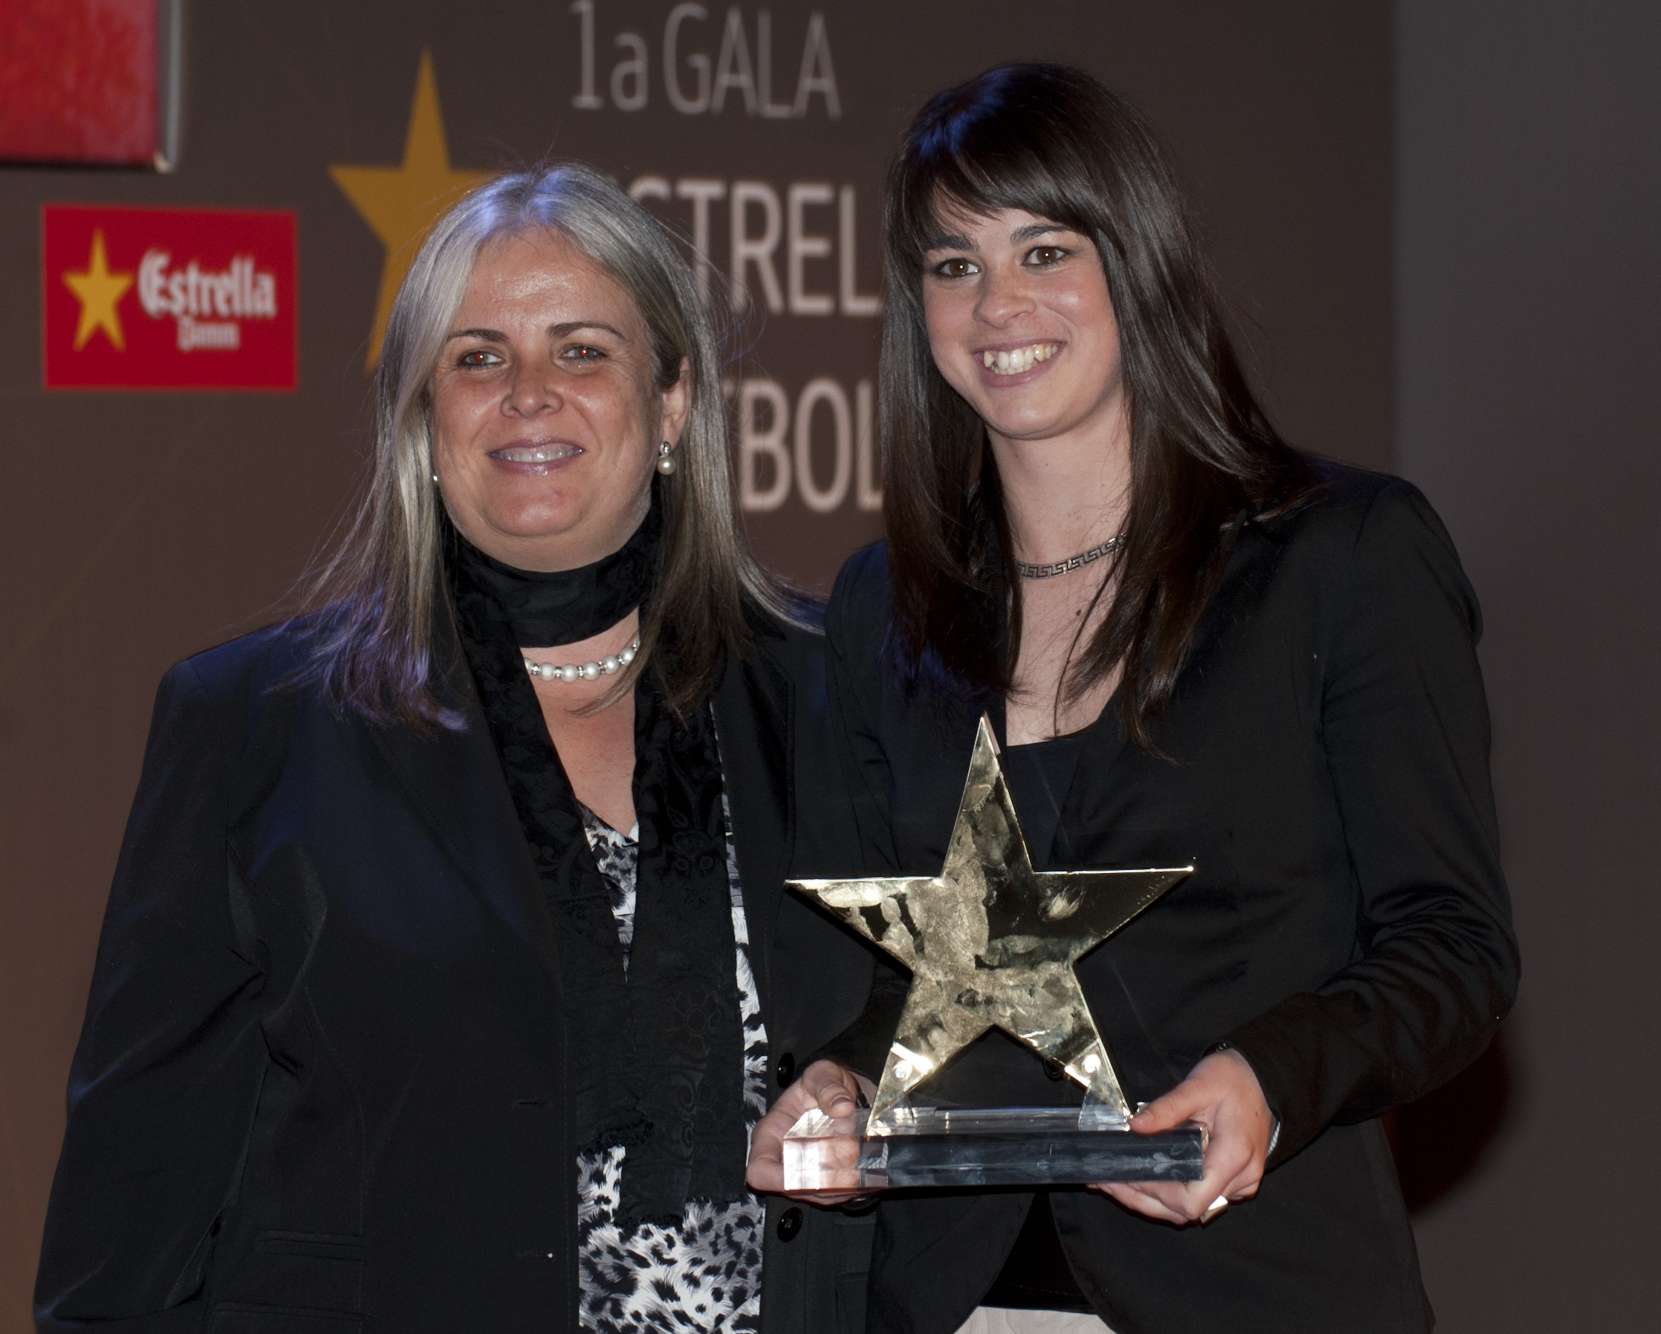 Marta Torrejón, guardonada com a millor jugadora catalana de la 1a Gala de les Estrelles